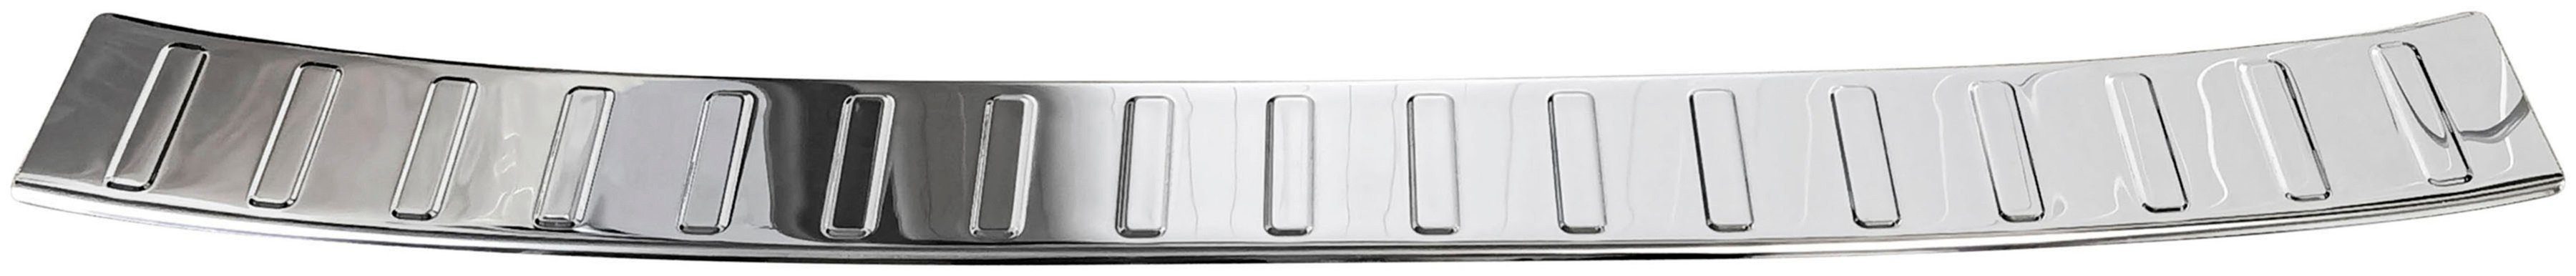 FIAT 356, RECAMBO Abkantung Ladekantenschutz, KOMBI, Zubehör Typ chrom mit poliert, 2015, Edelstahl TIPO für